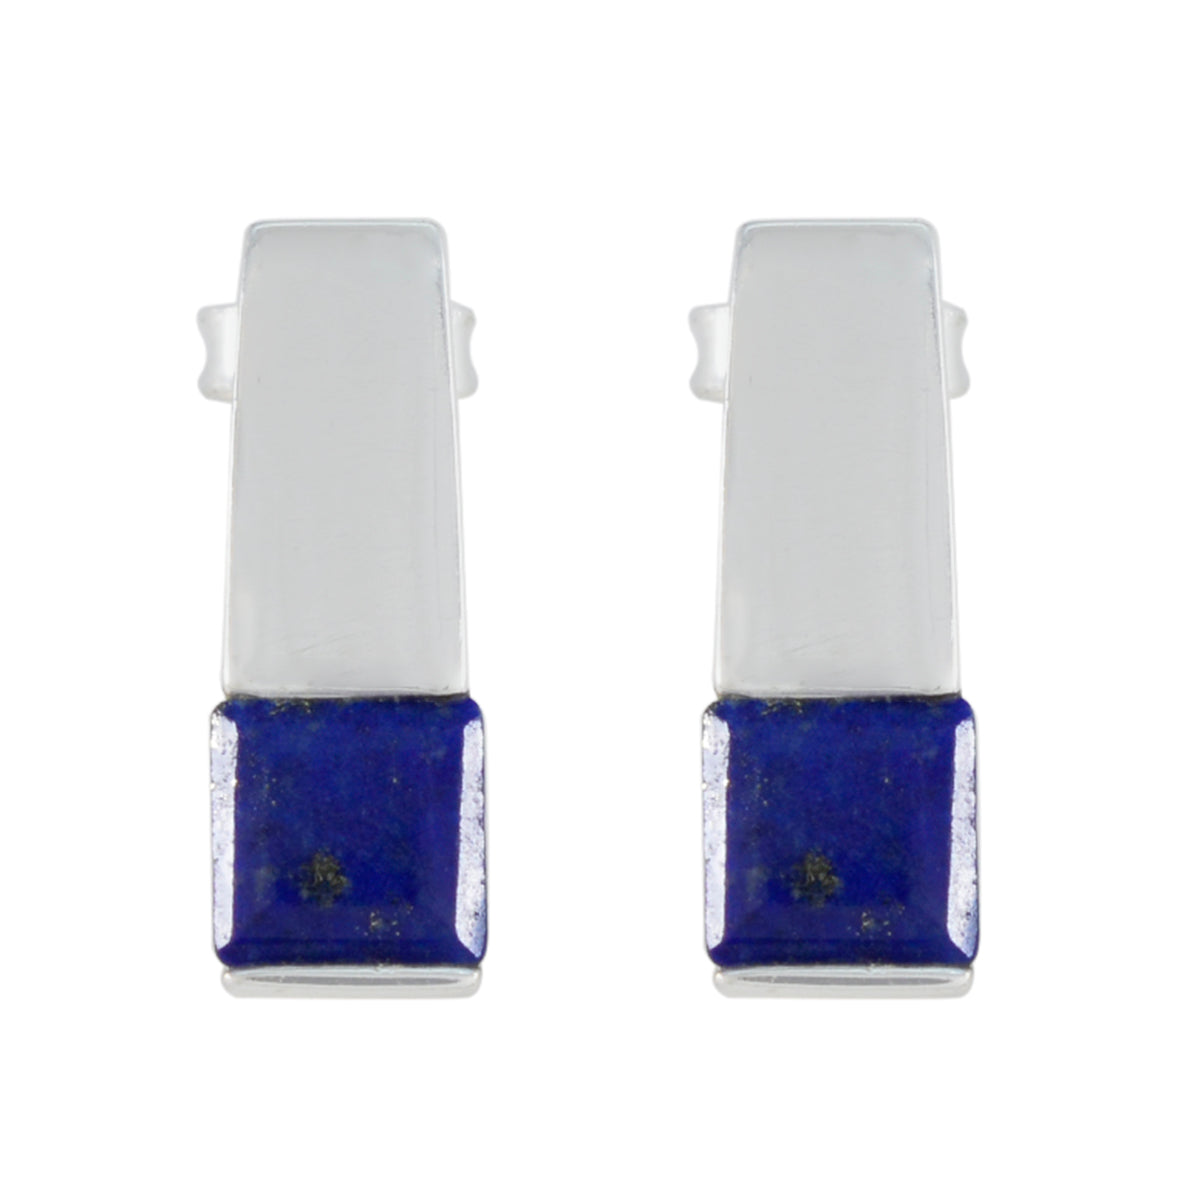 Riyo Heißer 925 Sterling Silber Ohrring Für Dame Lapis Lazuli Ohrring Lünette Einstellung Blau Ohrring Bolzen Ohrring